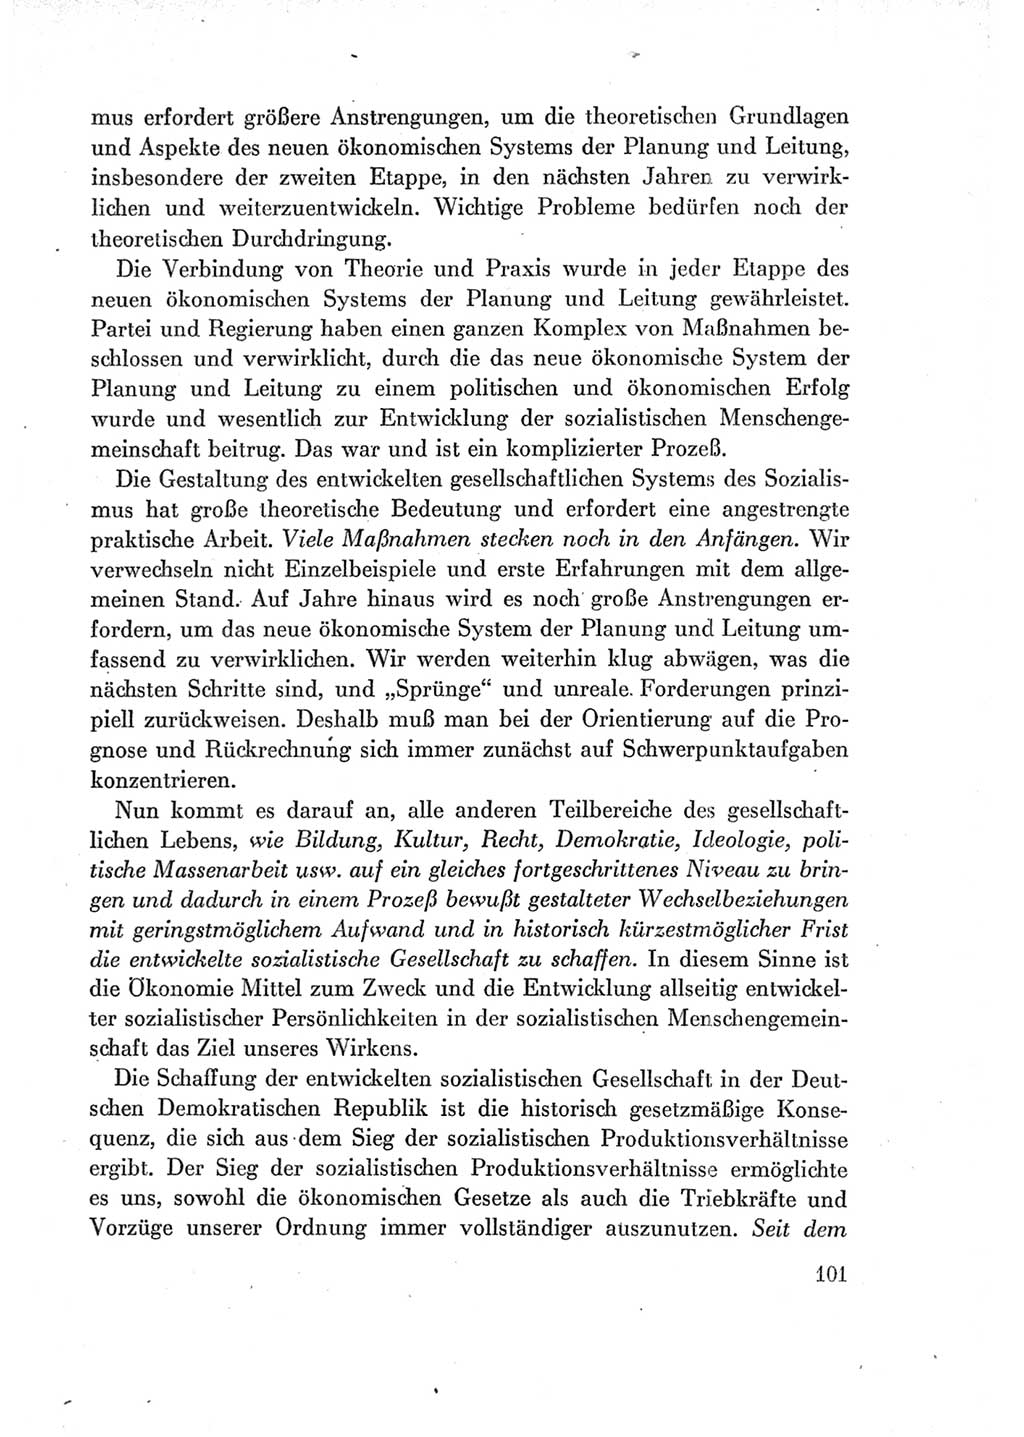 Protokoll der Verhandlungen des Ⅶ. Parteitages der Sozialistischen Einheitspartei Deutschlands (SED) [Deutsche Demokratische Republik (DDR)] 1967, Band Ⅰ, Seite 101 (Prot. Verh. Ⅶ. PT SED DDR 1967, Bd. Ⅰ, S. 101)